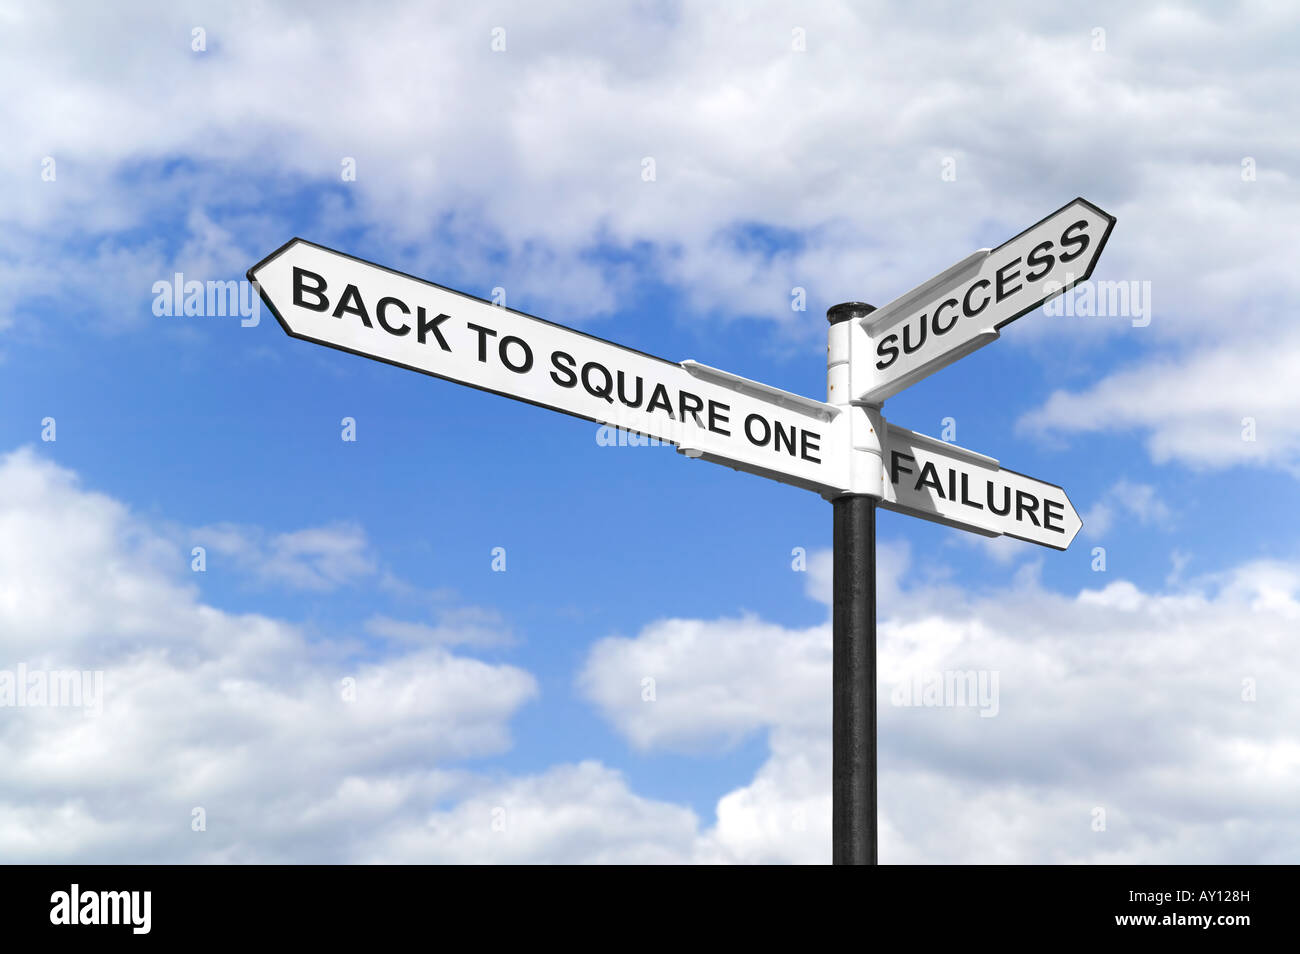 Konzept-Bild ein Wegweiser mit Back to Square One Erfolg und Misserfolg vor einem blauen bewölkten Himmel Stockfoto